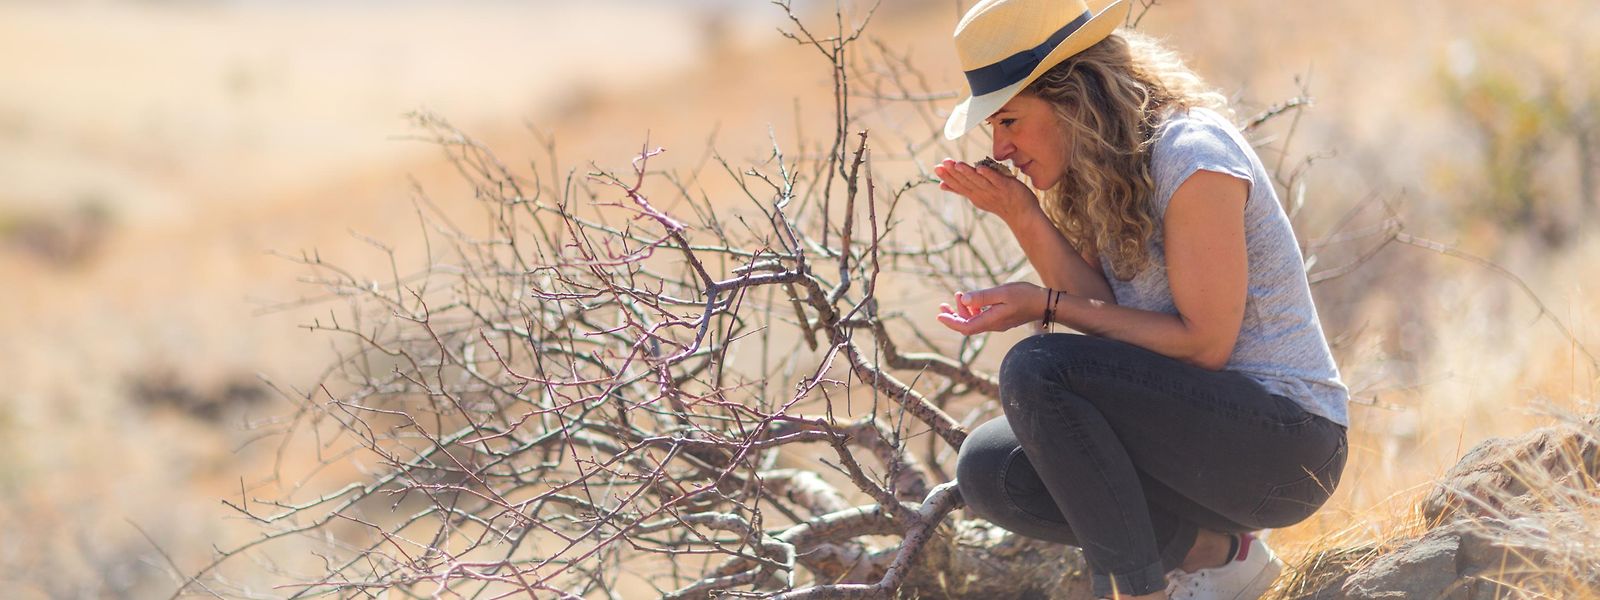 Auf der Suche nach frischen Ideen und neuen Inhaltsstoffen: Ihre Recherchereisen führen Céline Roux in die entlegensten Winkel der Welt, so wie hier nach Namibia.